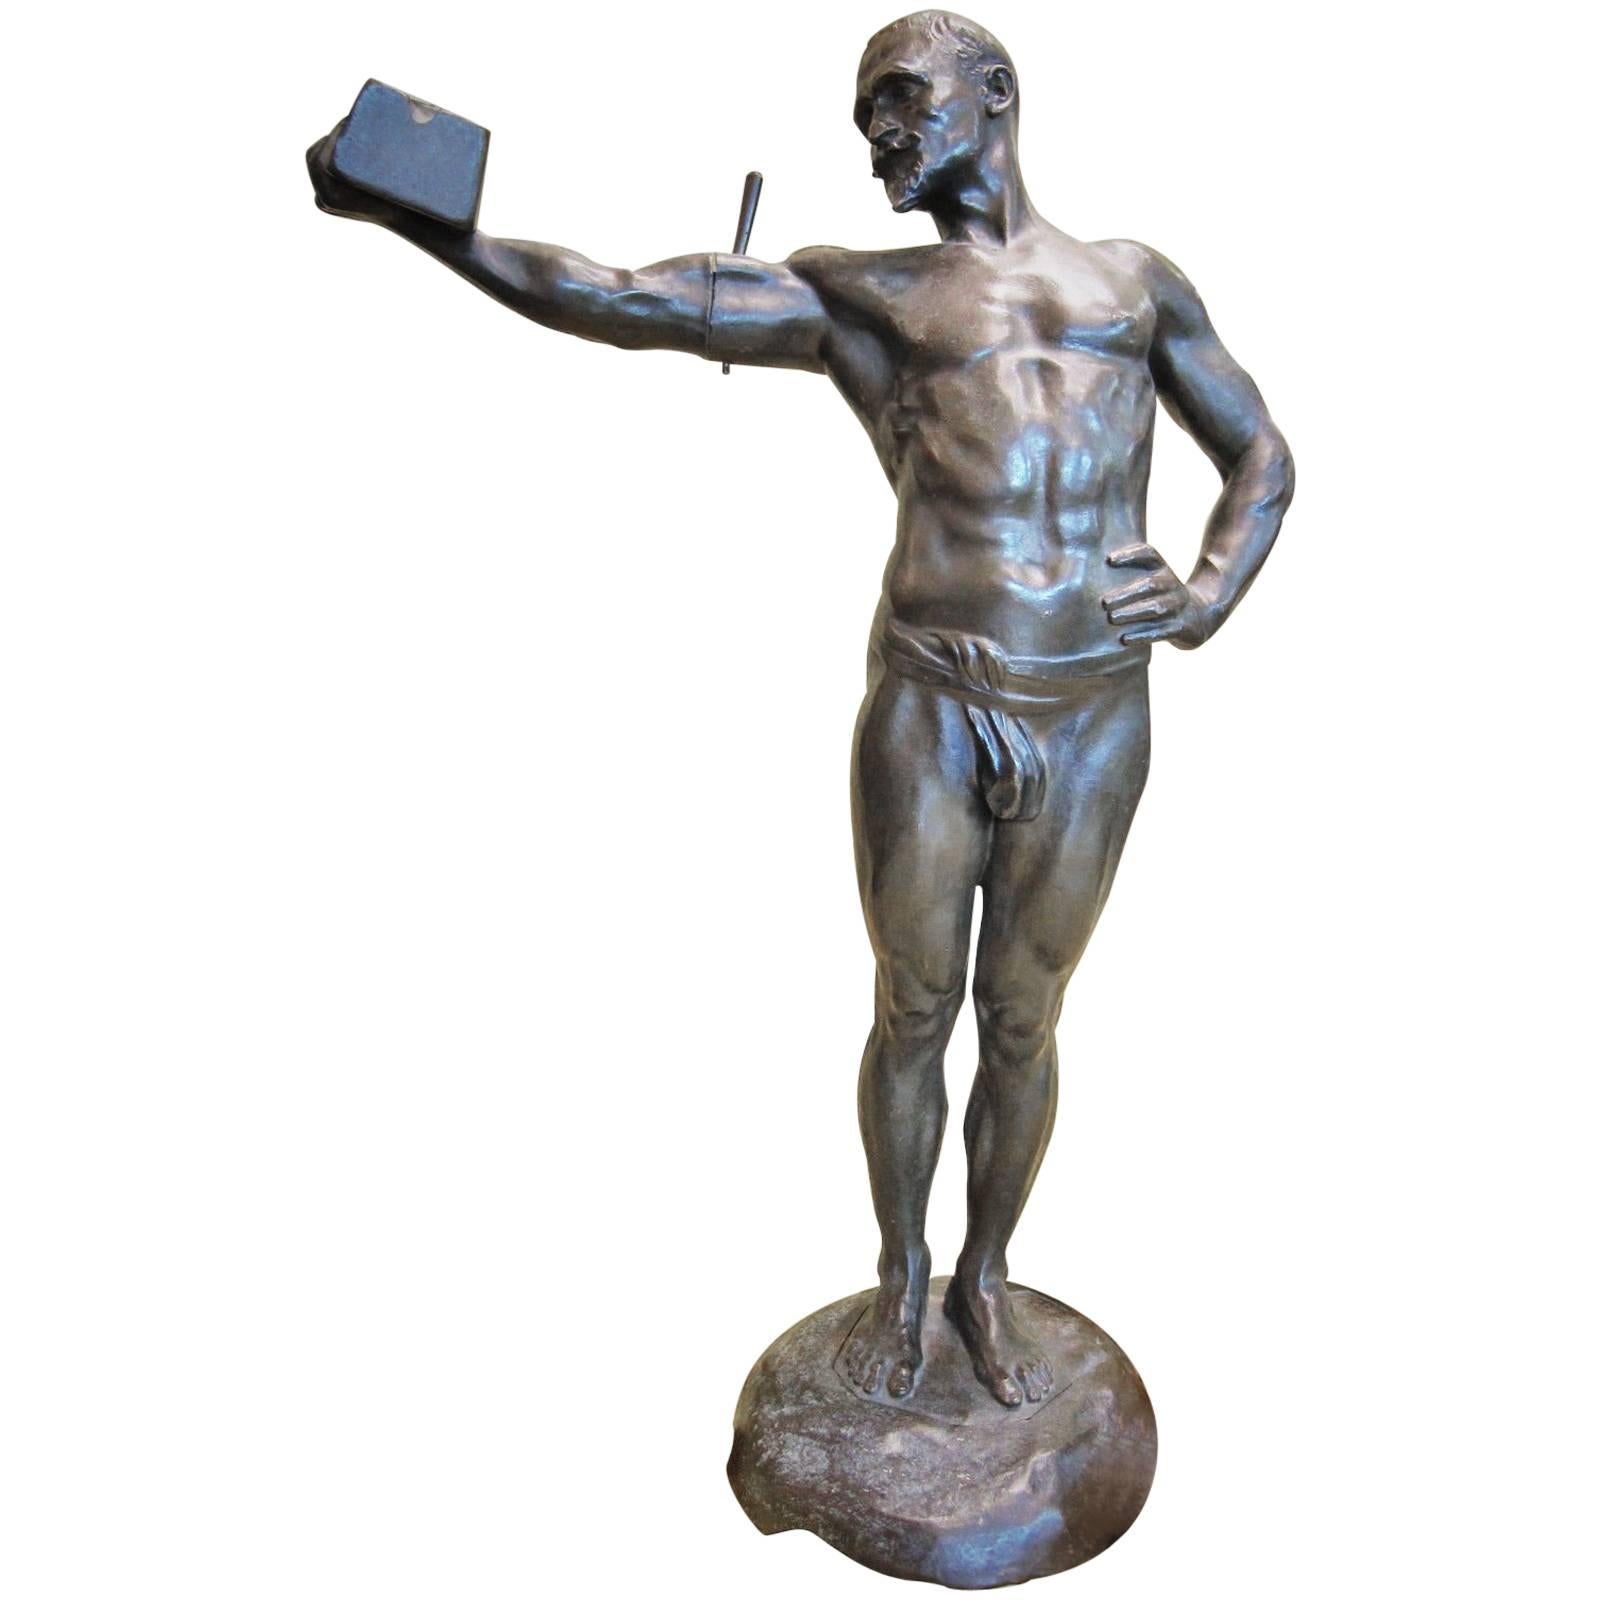 Paul Richer, Weightlifter, French Art Nouveau Bronze Sculpture, ca. 1900